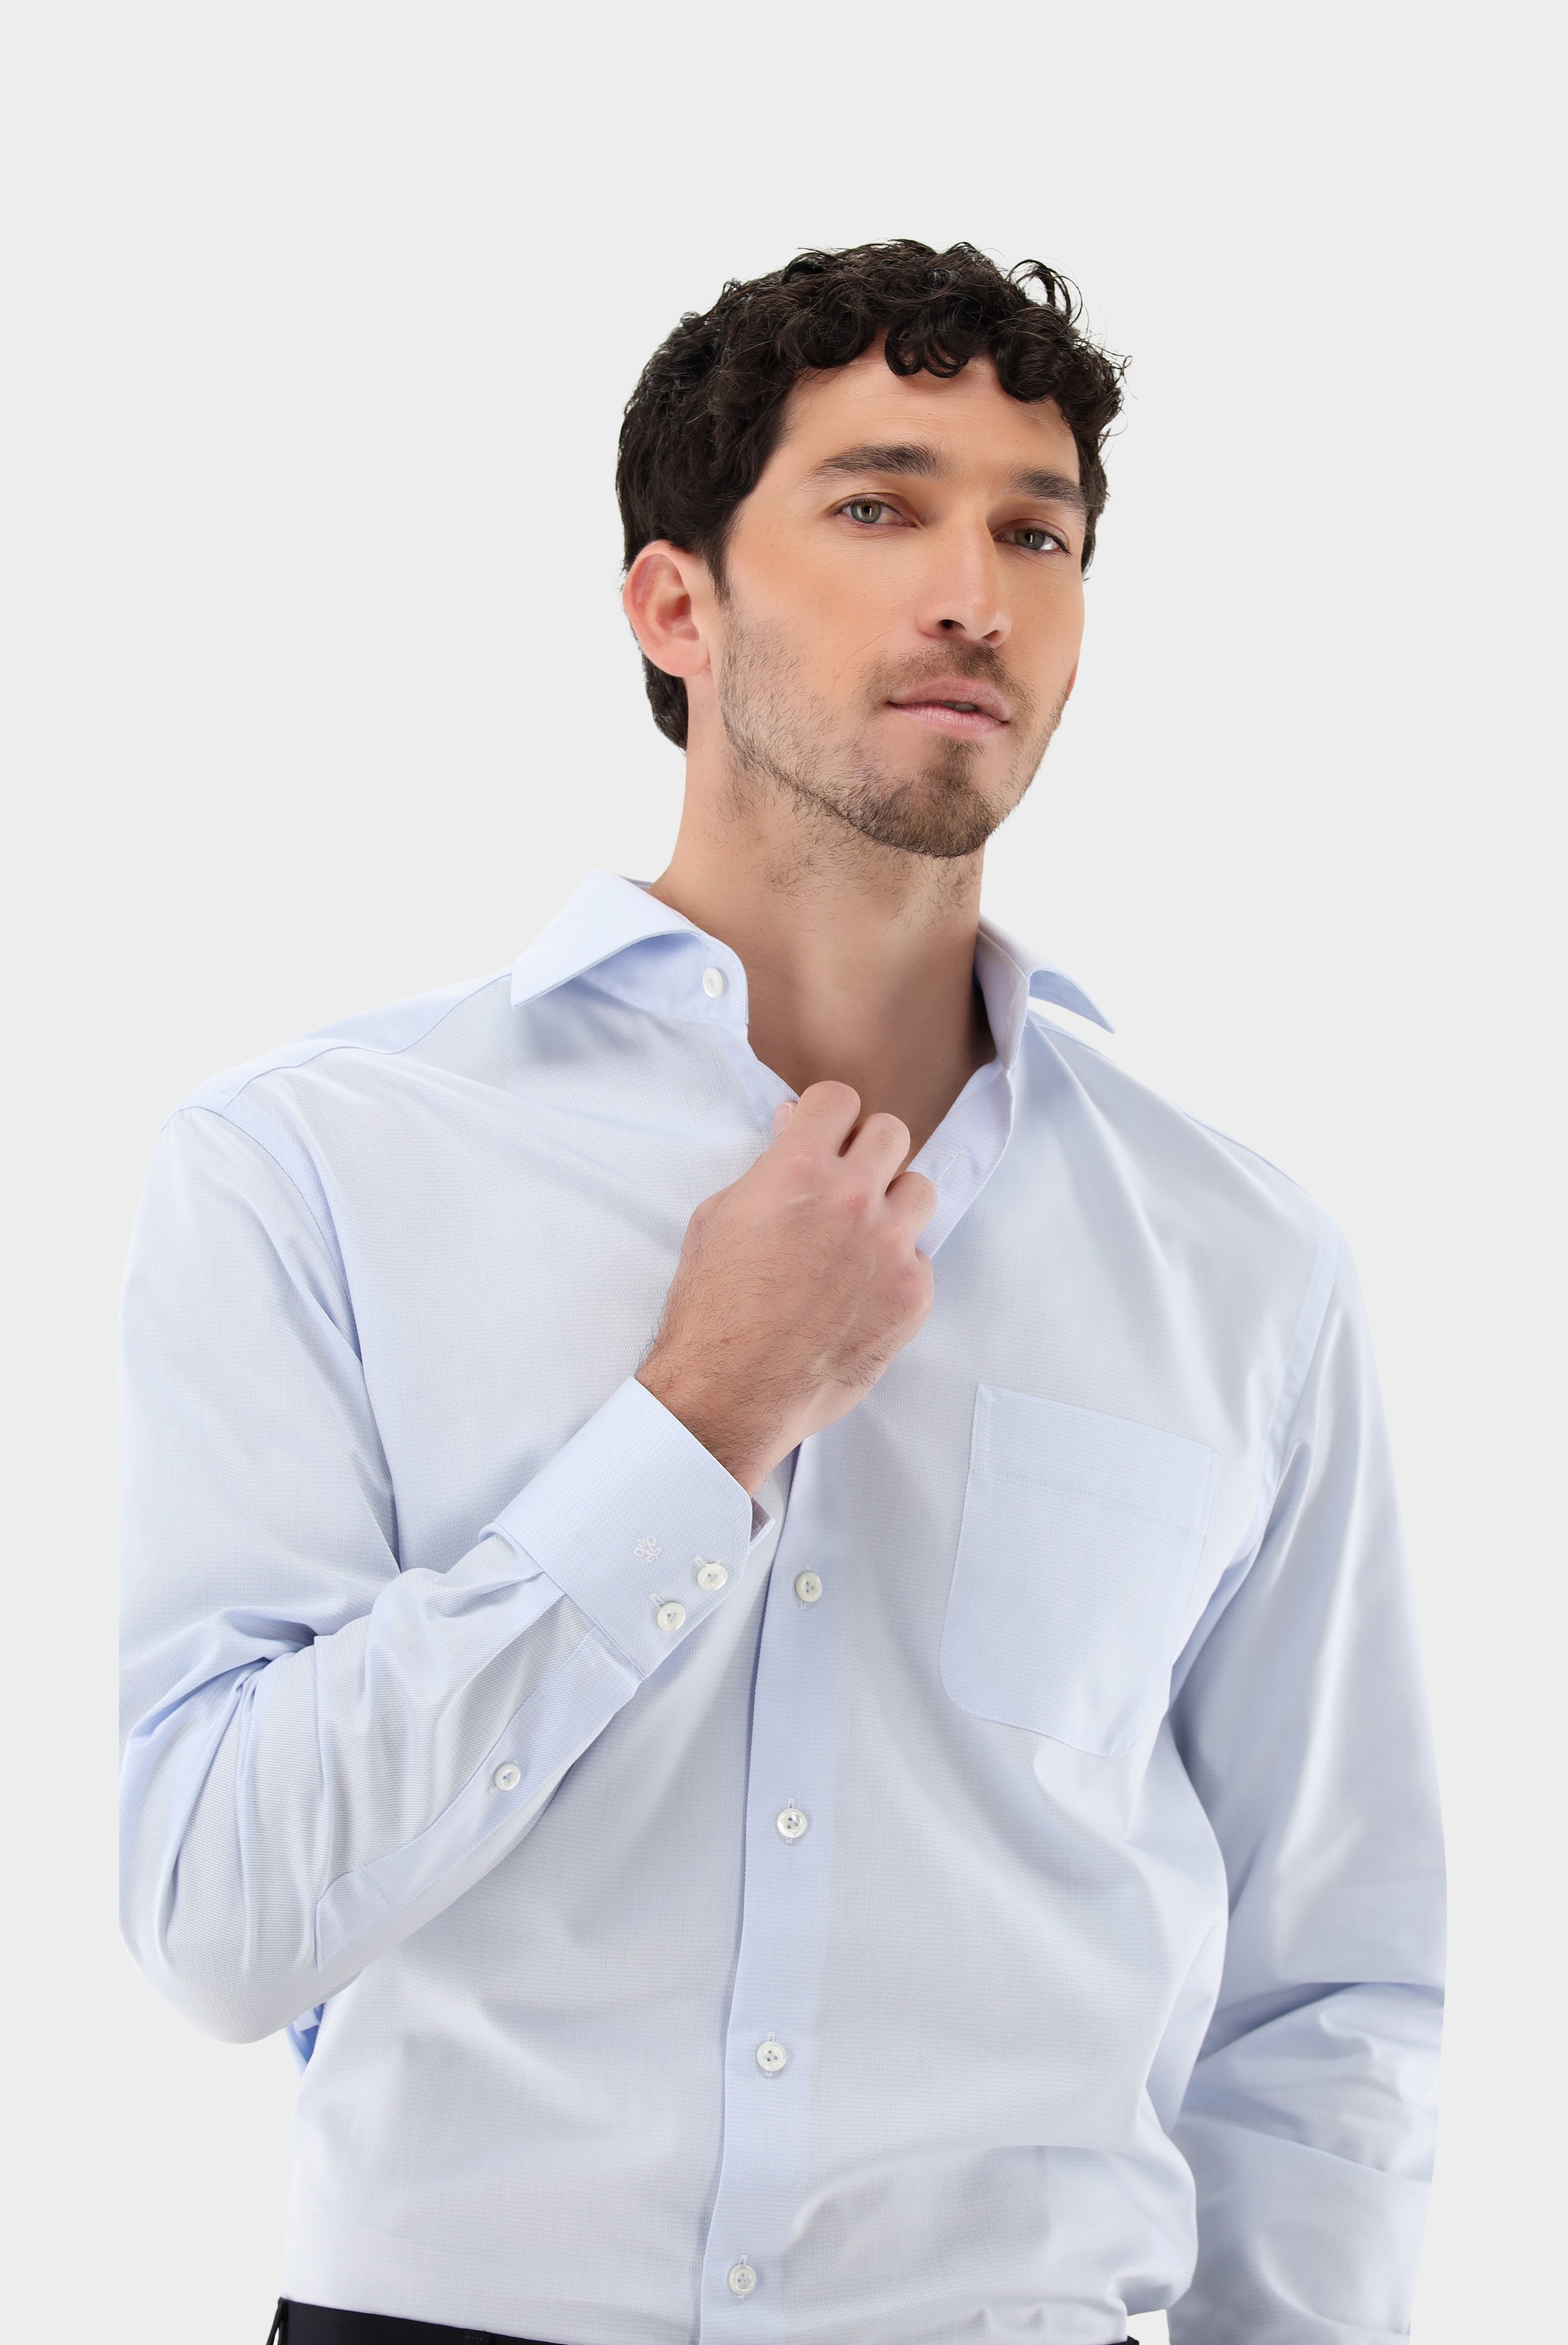 Bügelleichte Hemden+Bügelfreies Twil Hemd mit Struktur Comfort Fit+20.2021.BQ.150301.720.45